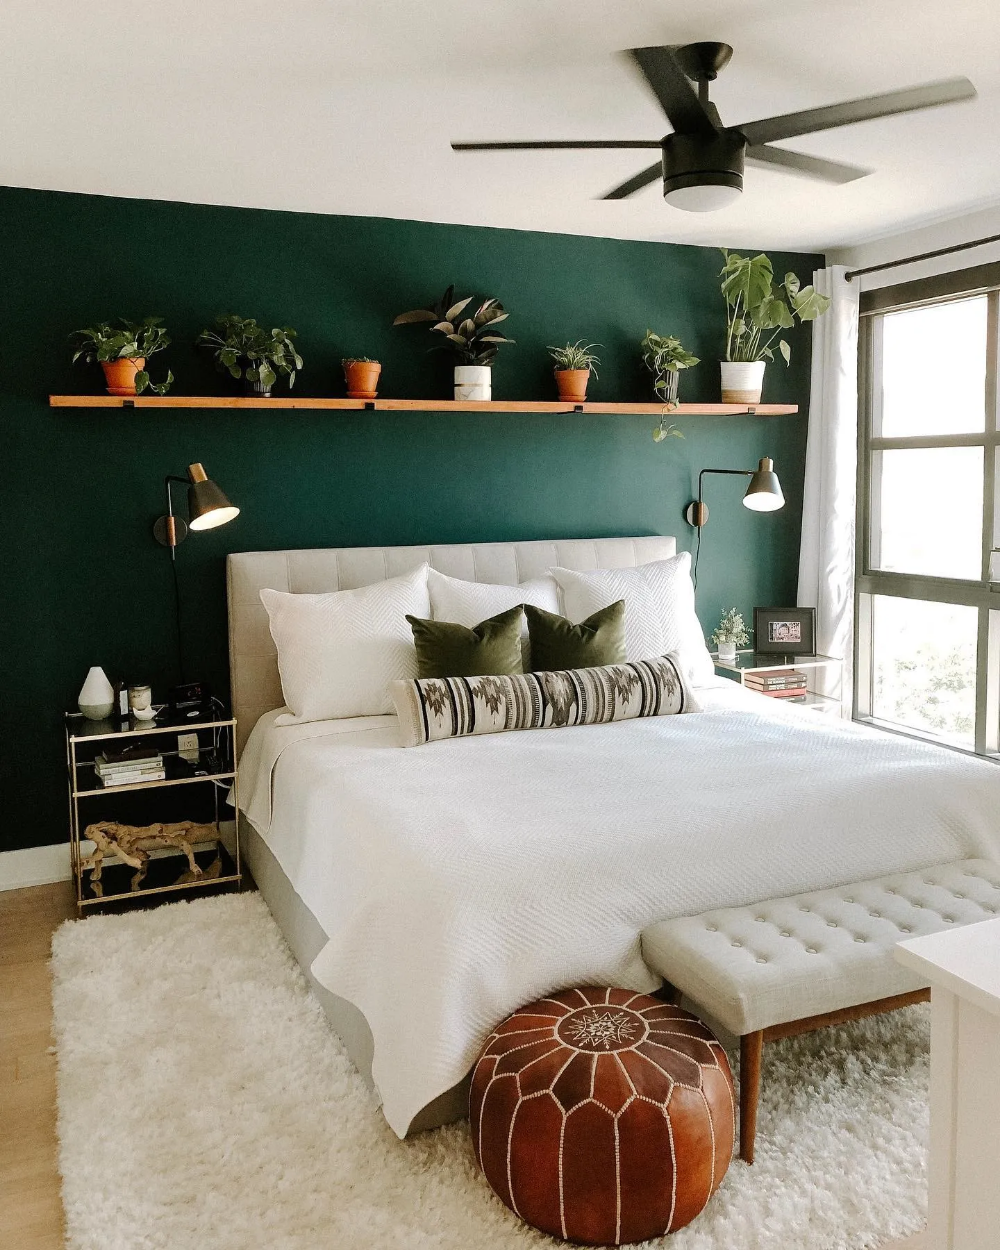 Mẫu thiết kế phòng ngủ xanh lá đậm đẹp